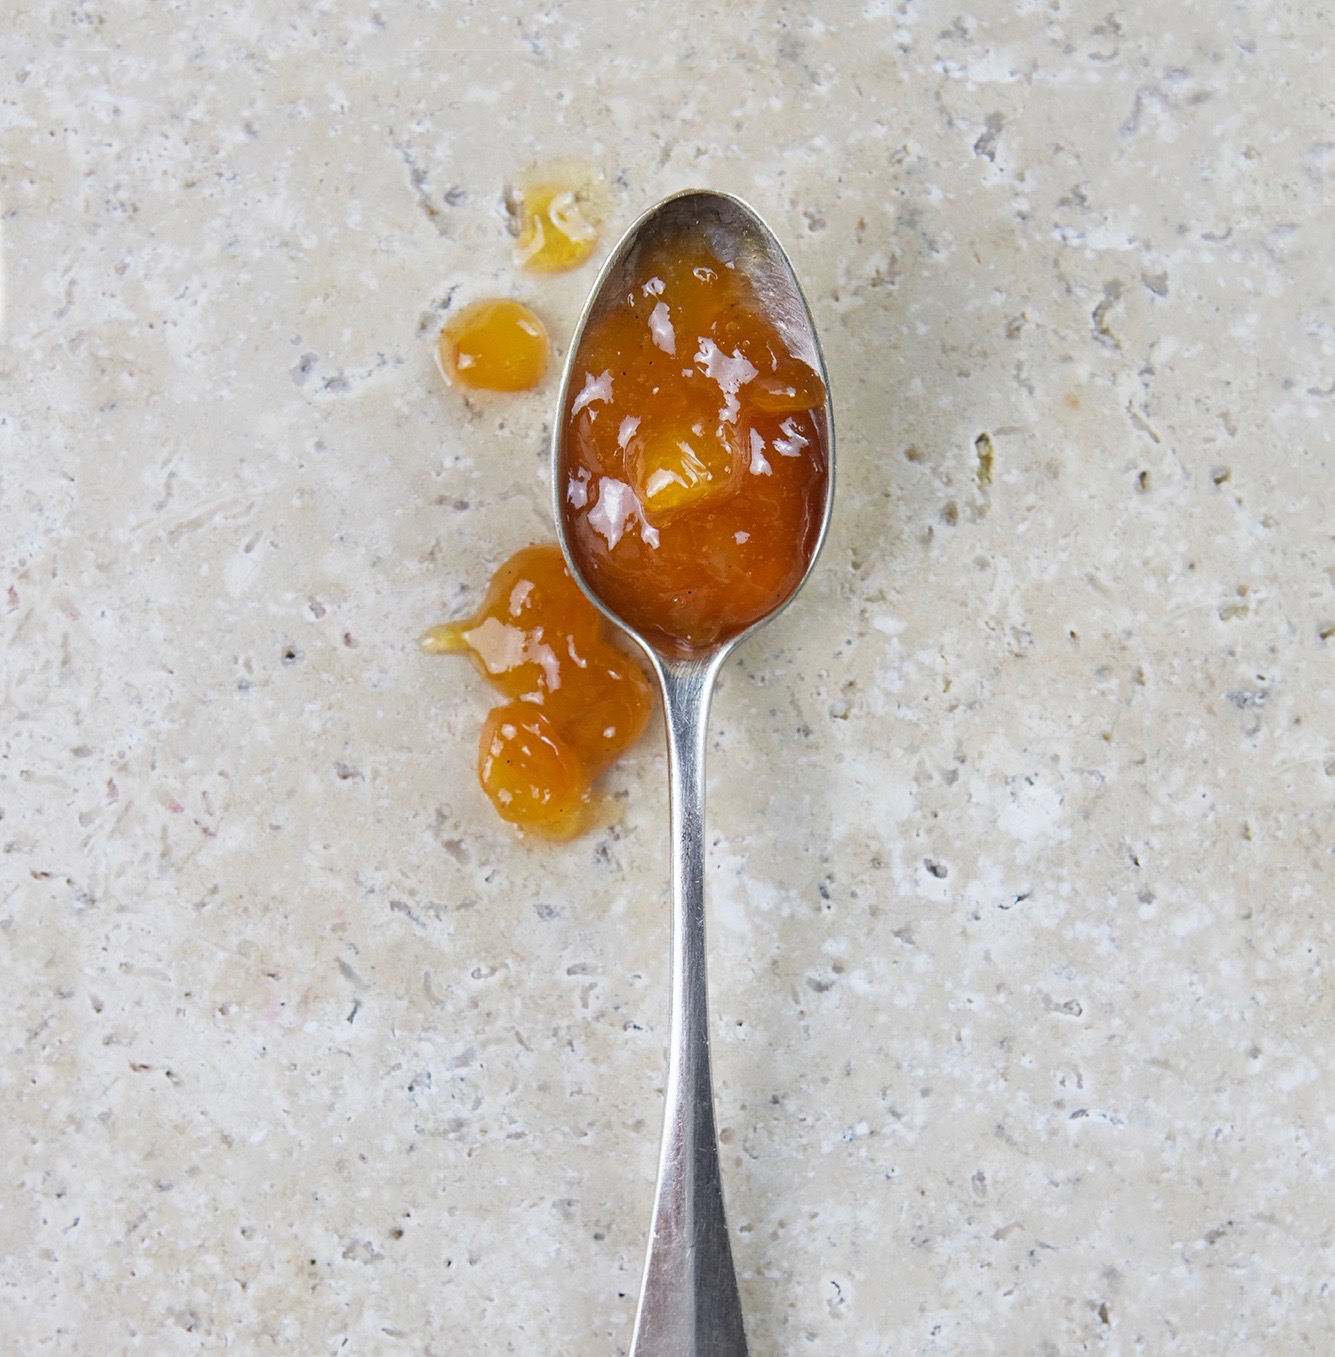 Confiture abricot vanille : étiquettes - 1 2 3 Flo bricole : LES